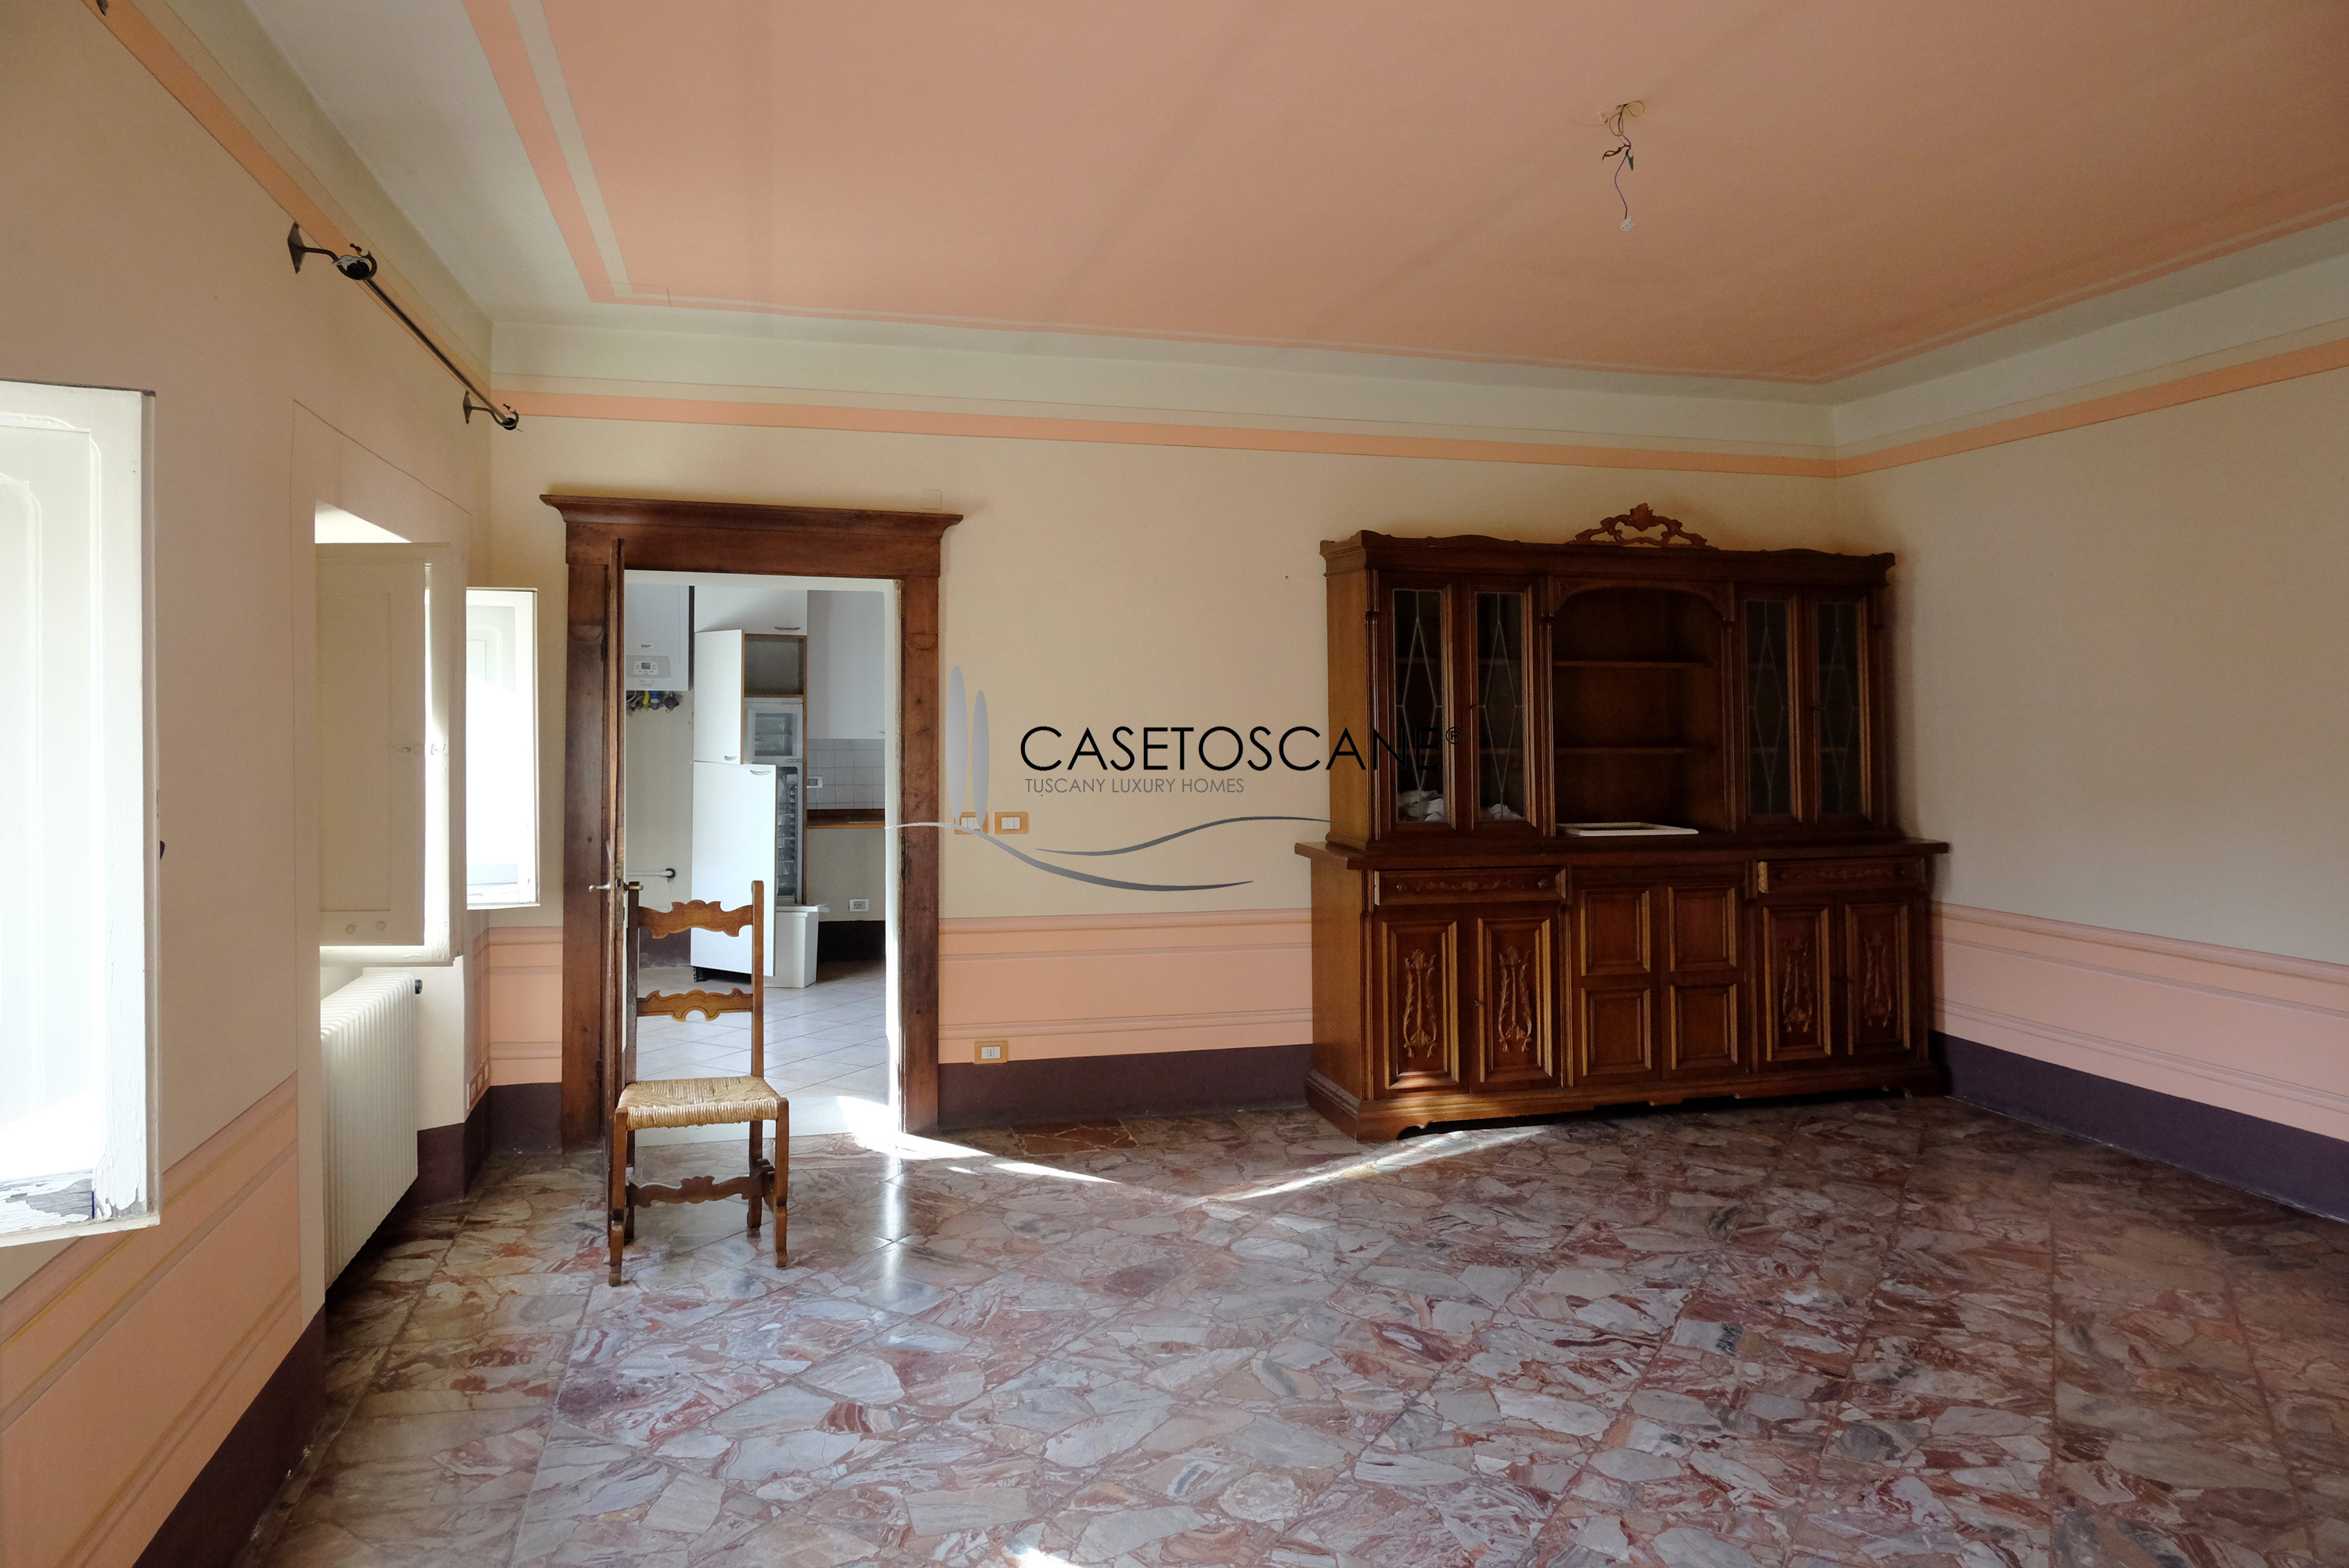 A756 - Appartamento di pregio di circa mq.130 in ottime condizioni, posto all'ultimo piano di un elegante edificio posto nel centro storico di Arezzo.